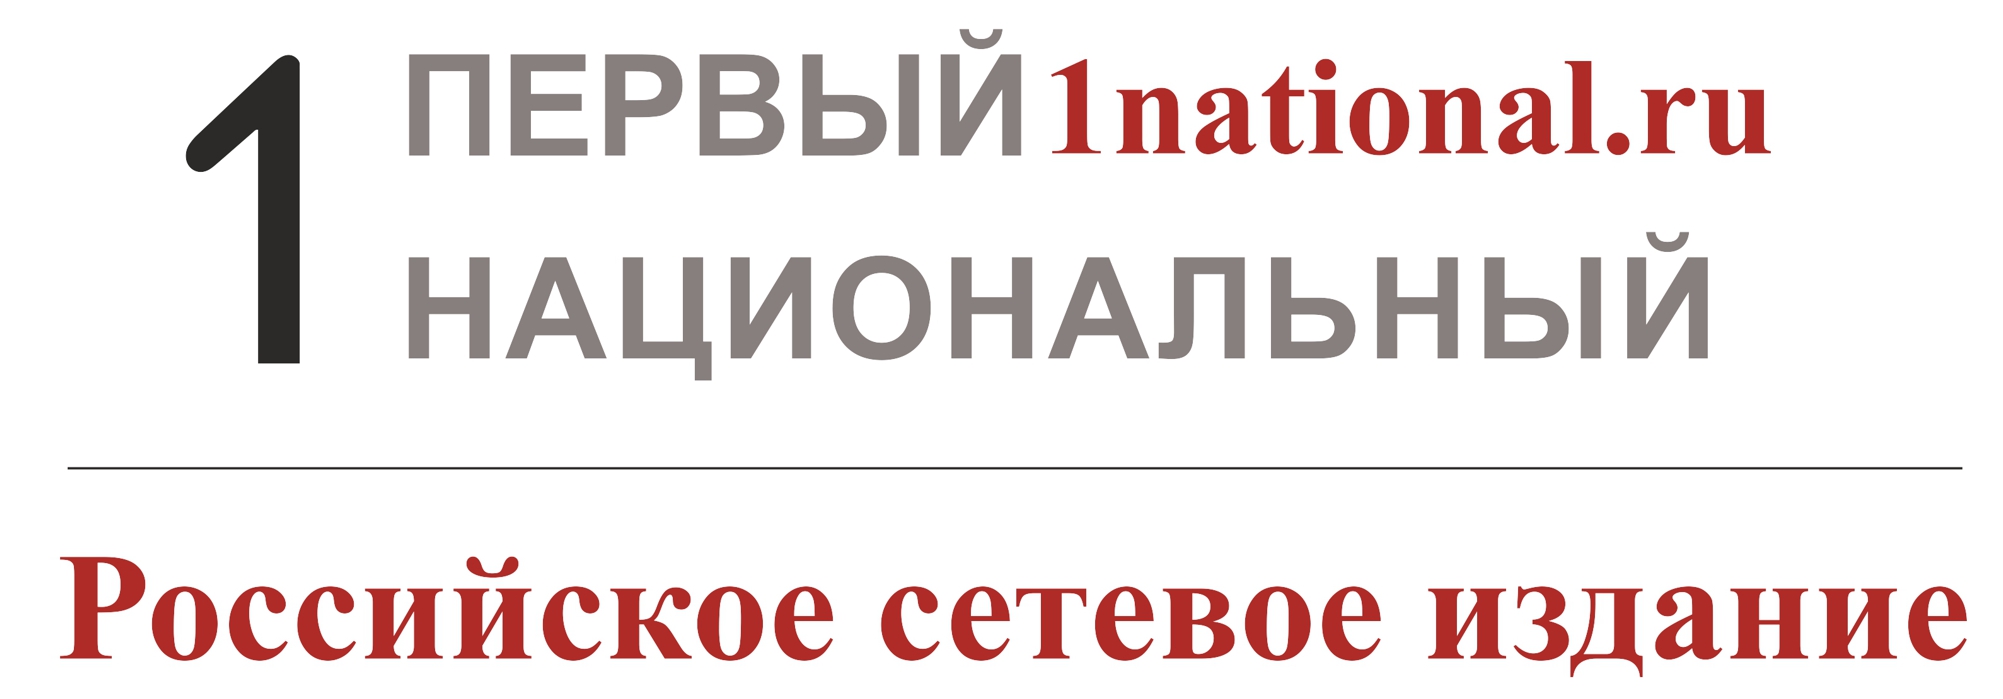 1 национальный про. Первый национальный. Российский национальный канал. 1 Национальный лого. Телеканал 1 российский национальный логотип.